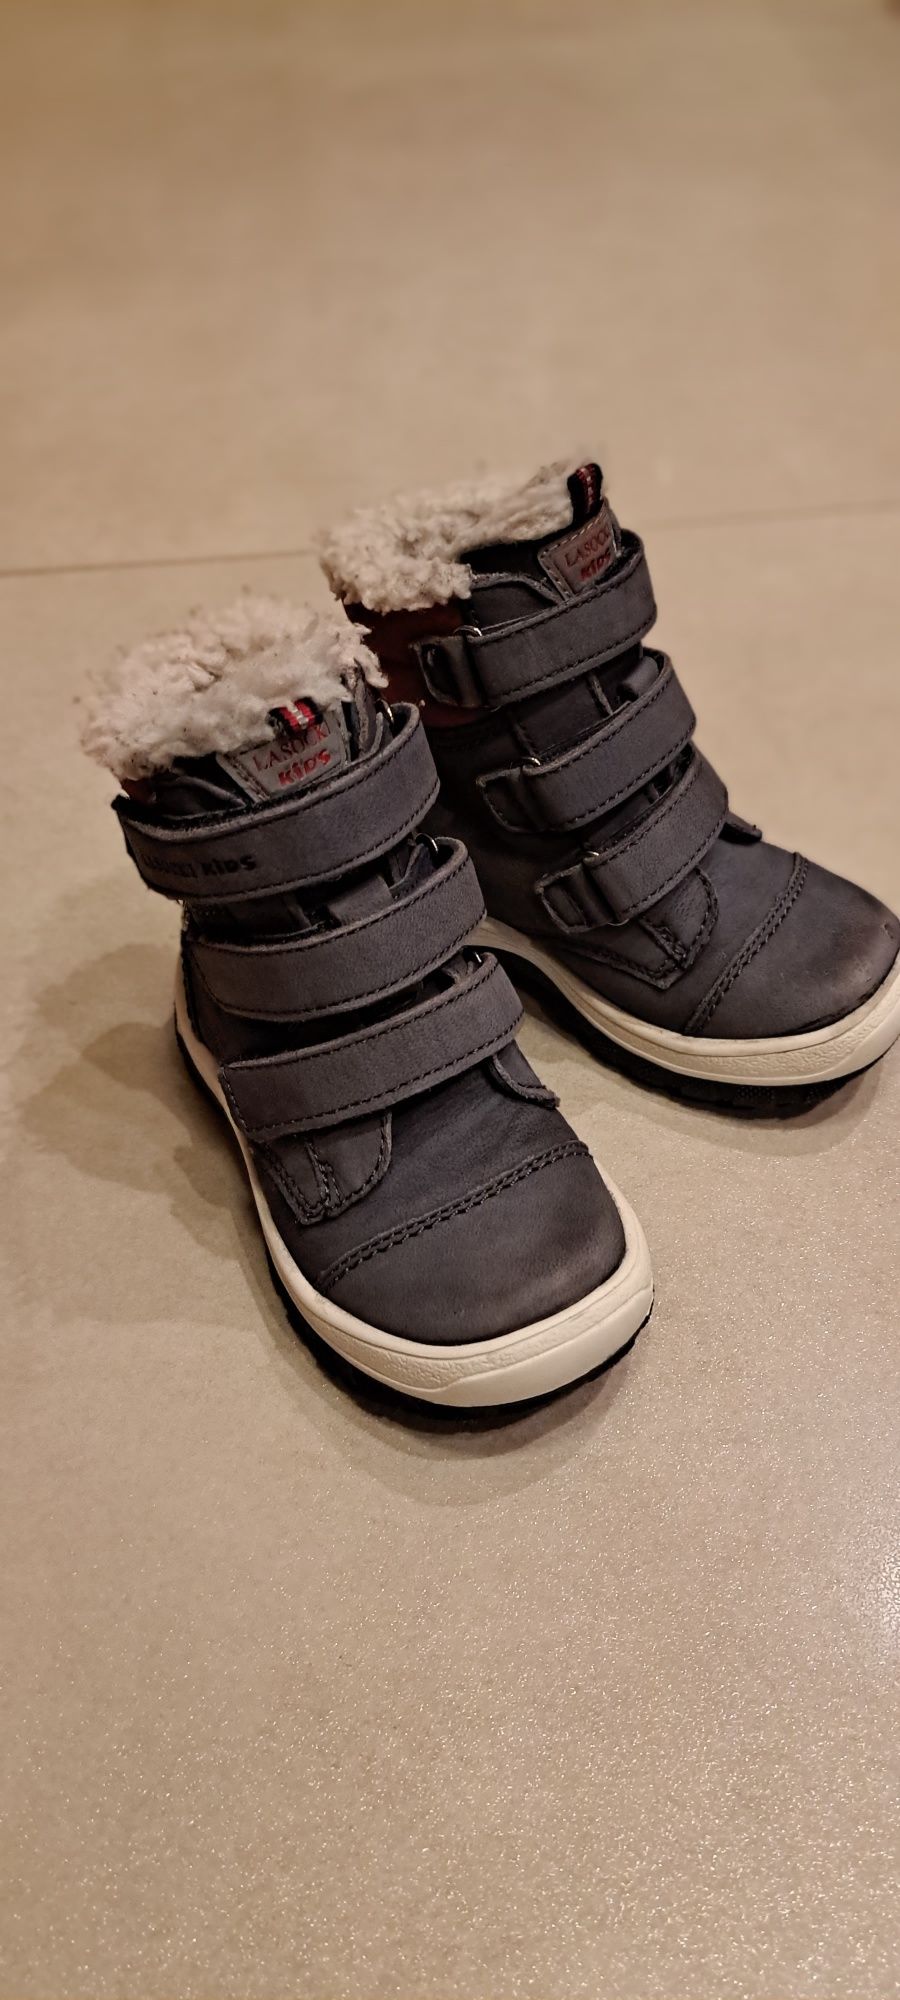 Buty zimowe chłopięce Lasocki Kids r. 22. dł.wew. 14,5cm.